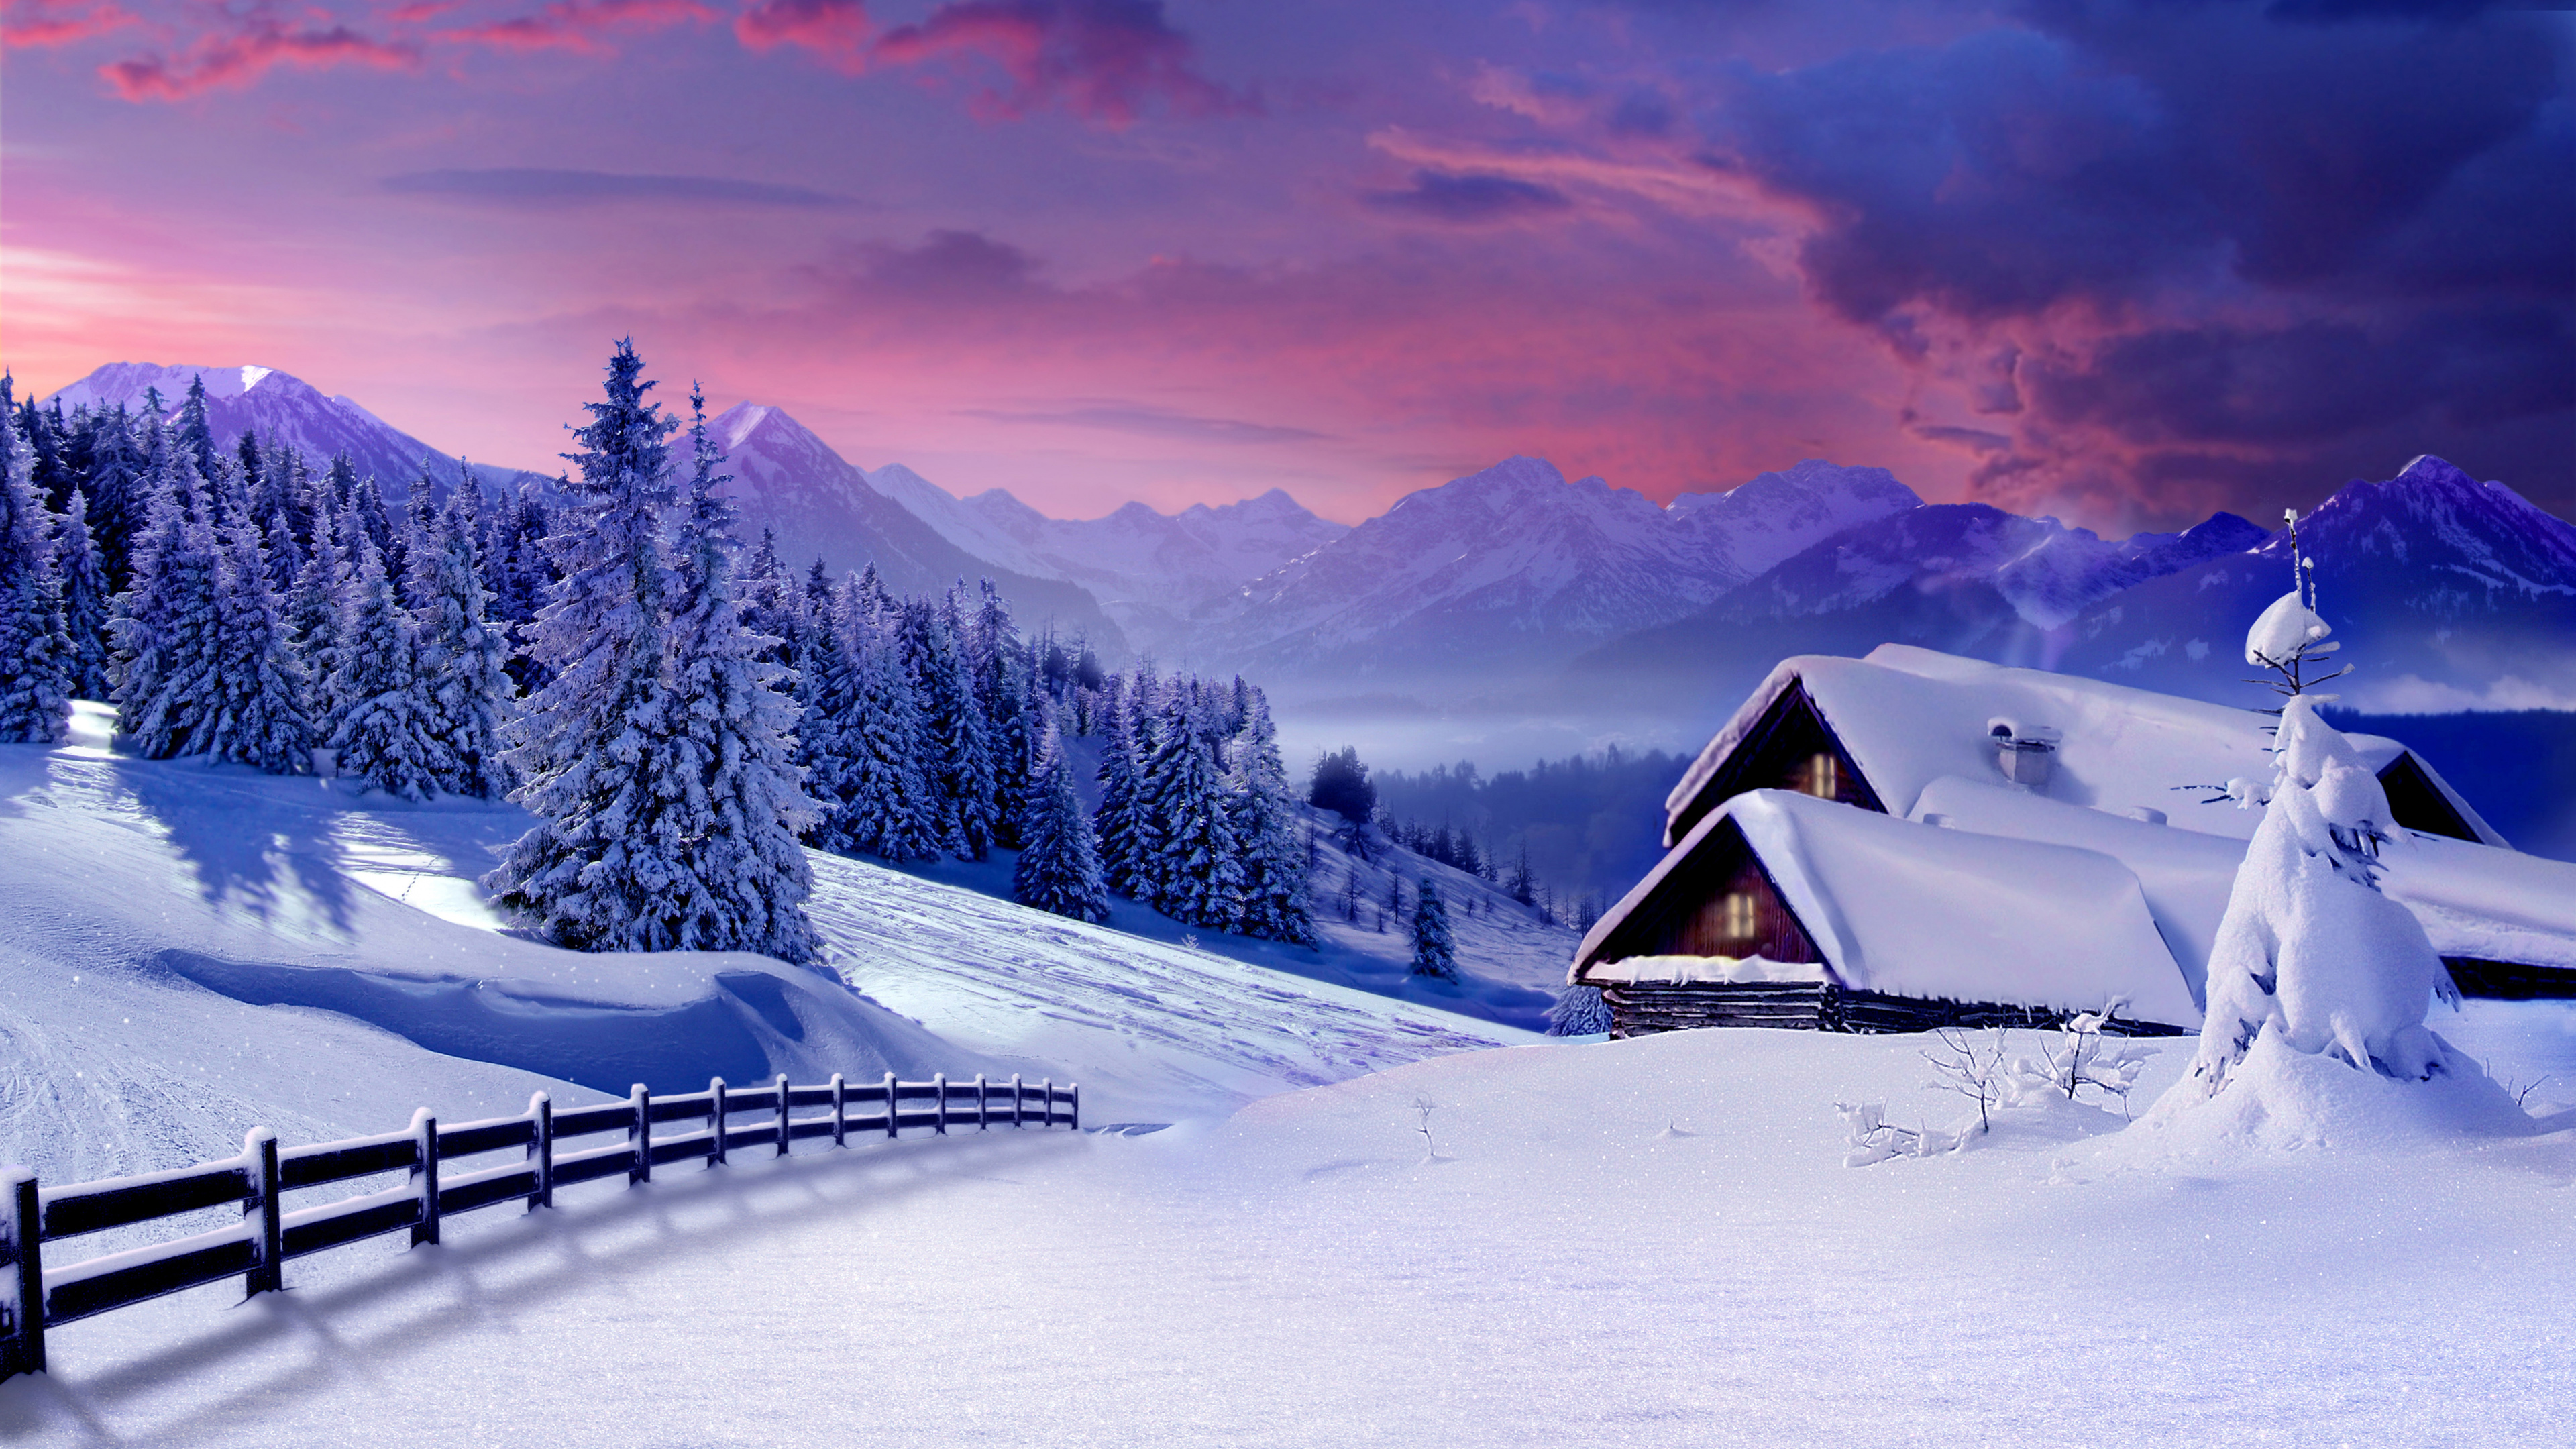 冬天, 性质, 冻结, 山脉, 阿尔卑斯山 壁纸 3840x2160 允许